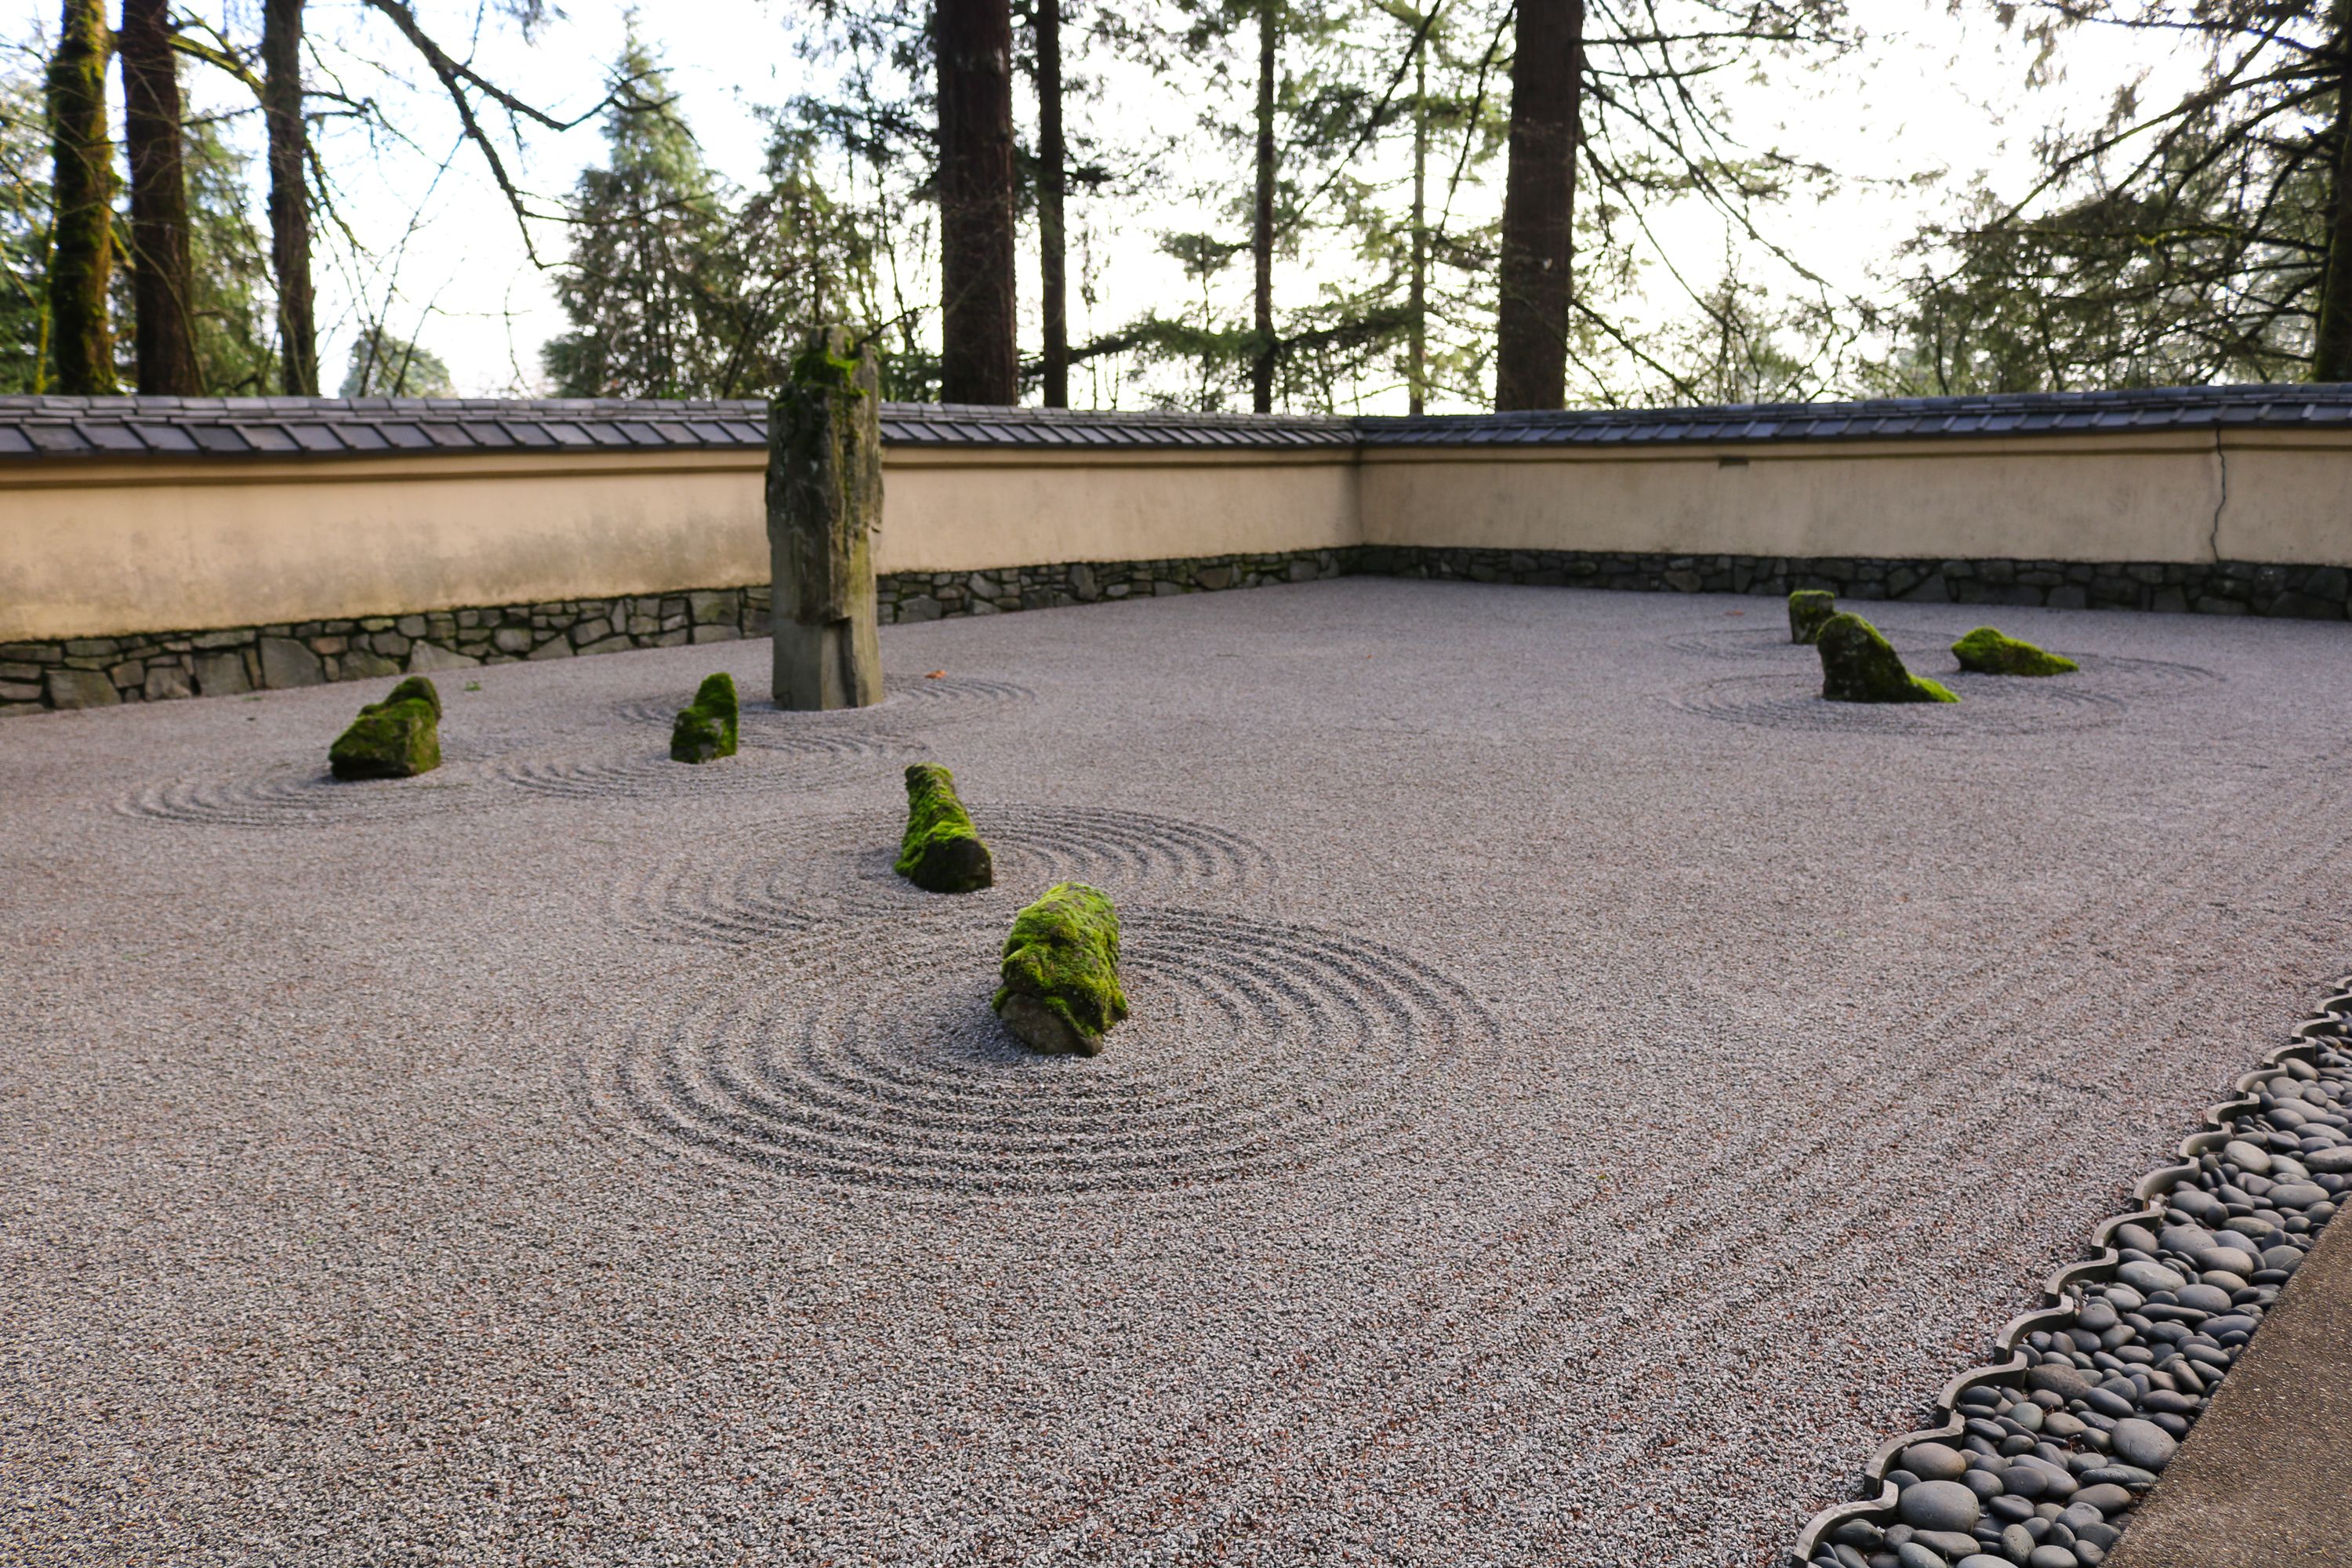 Everything You Need for a Zen Garden - Dengarden